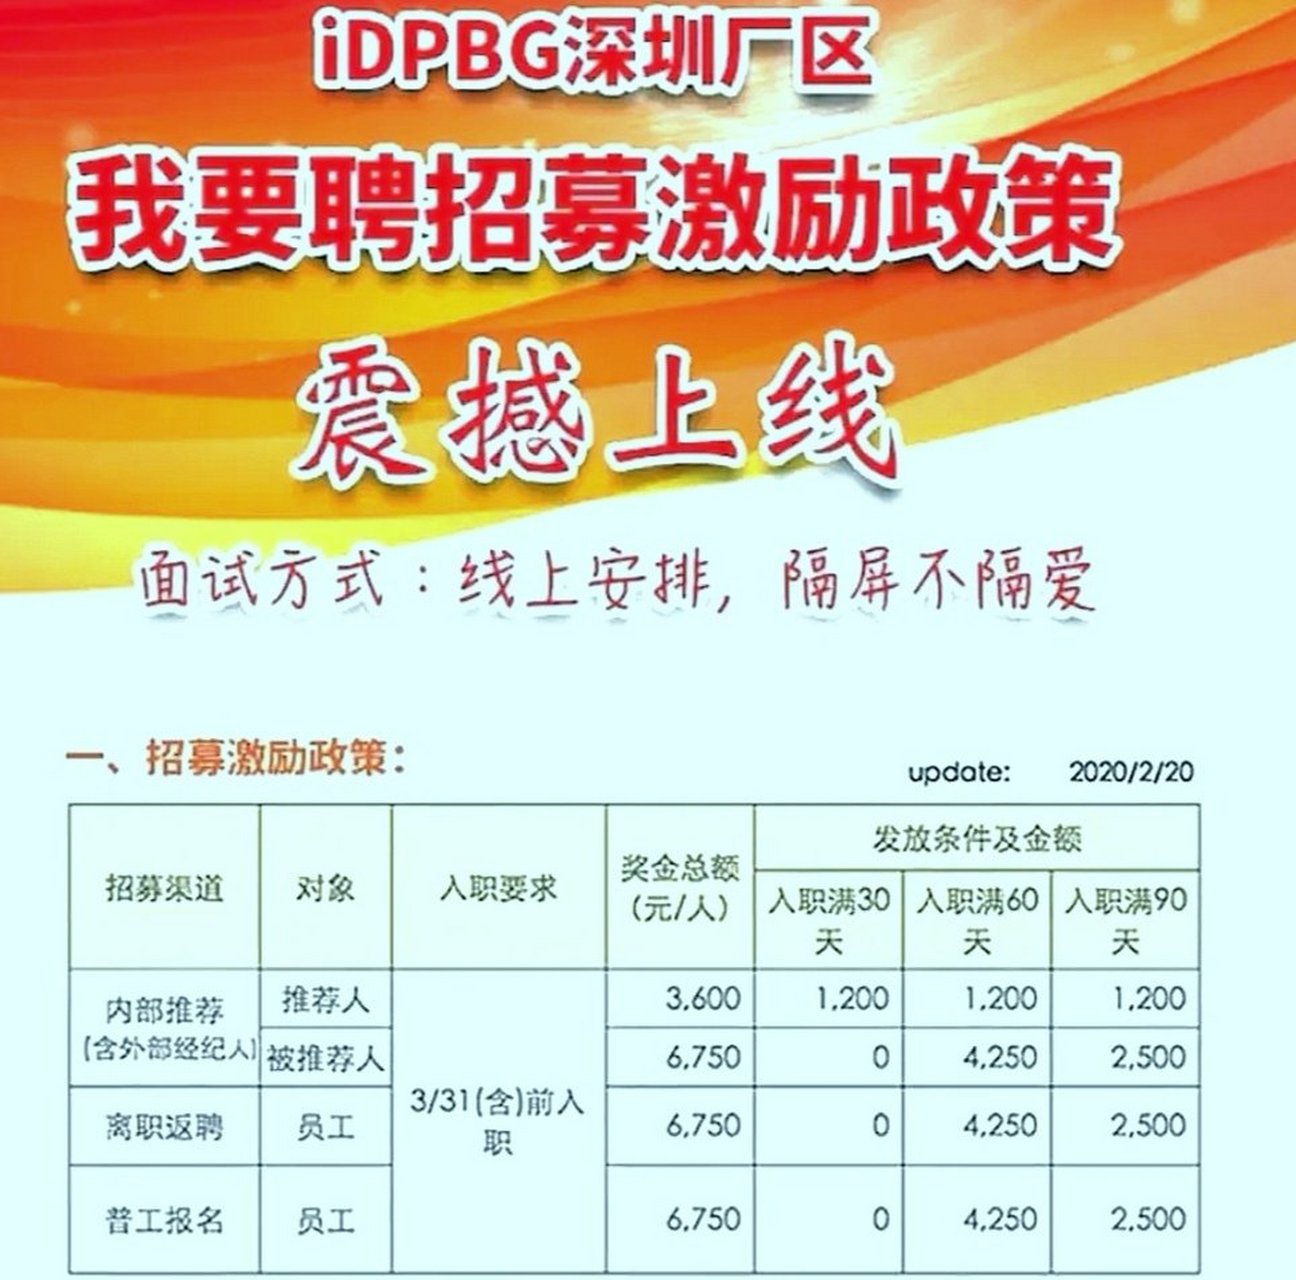 idpbg深圳厂区,招募激励政策震撼上线